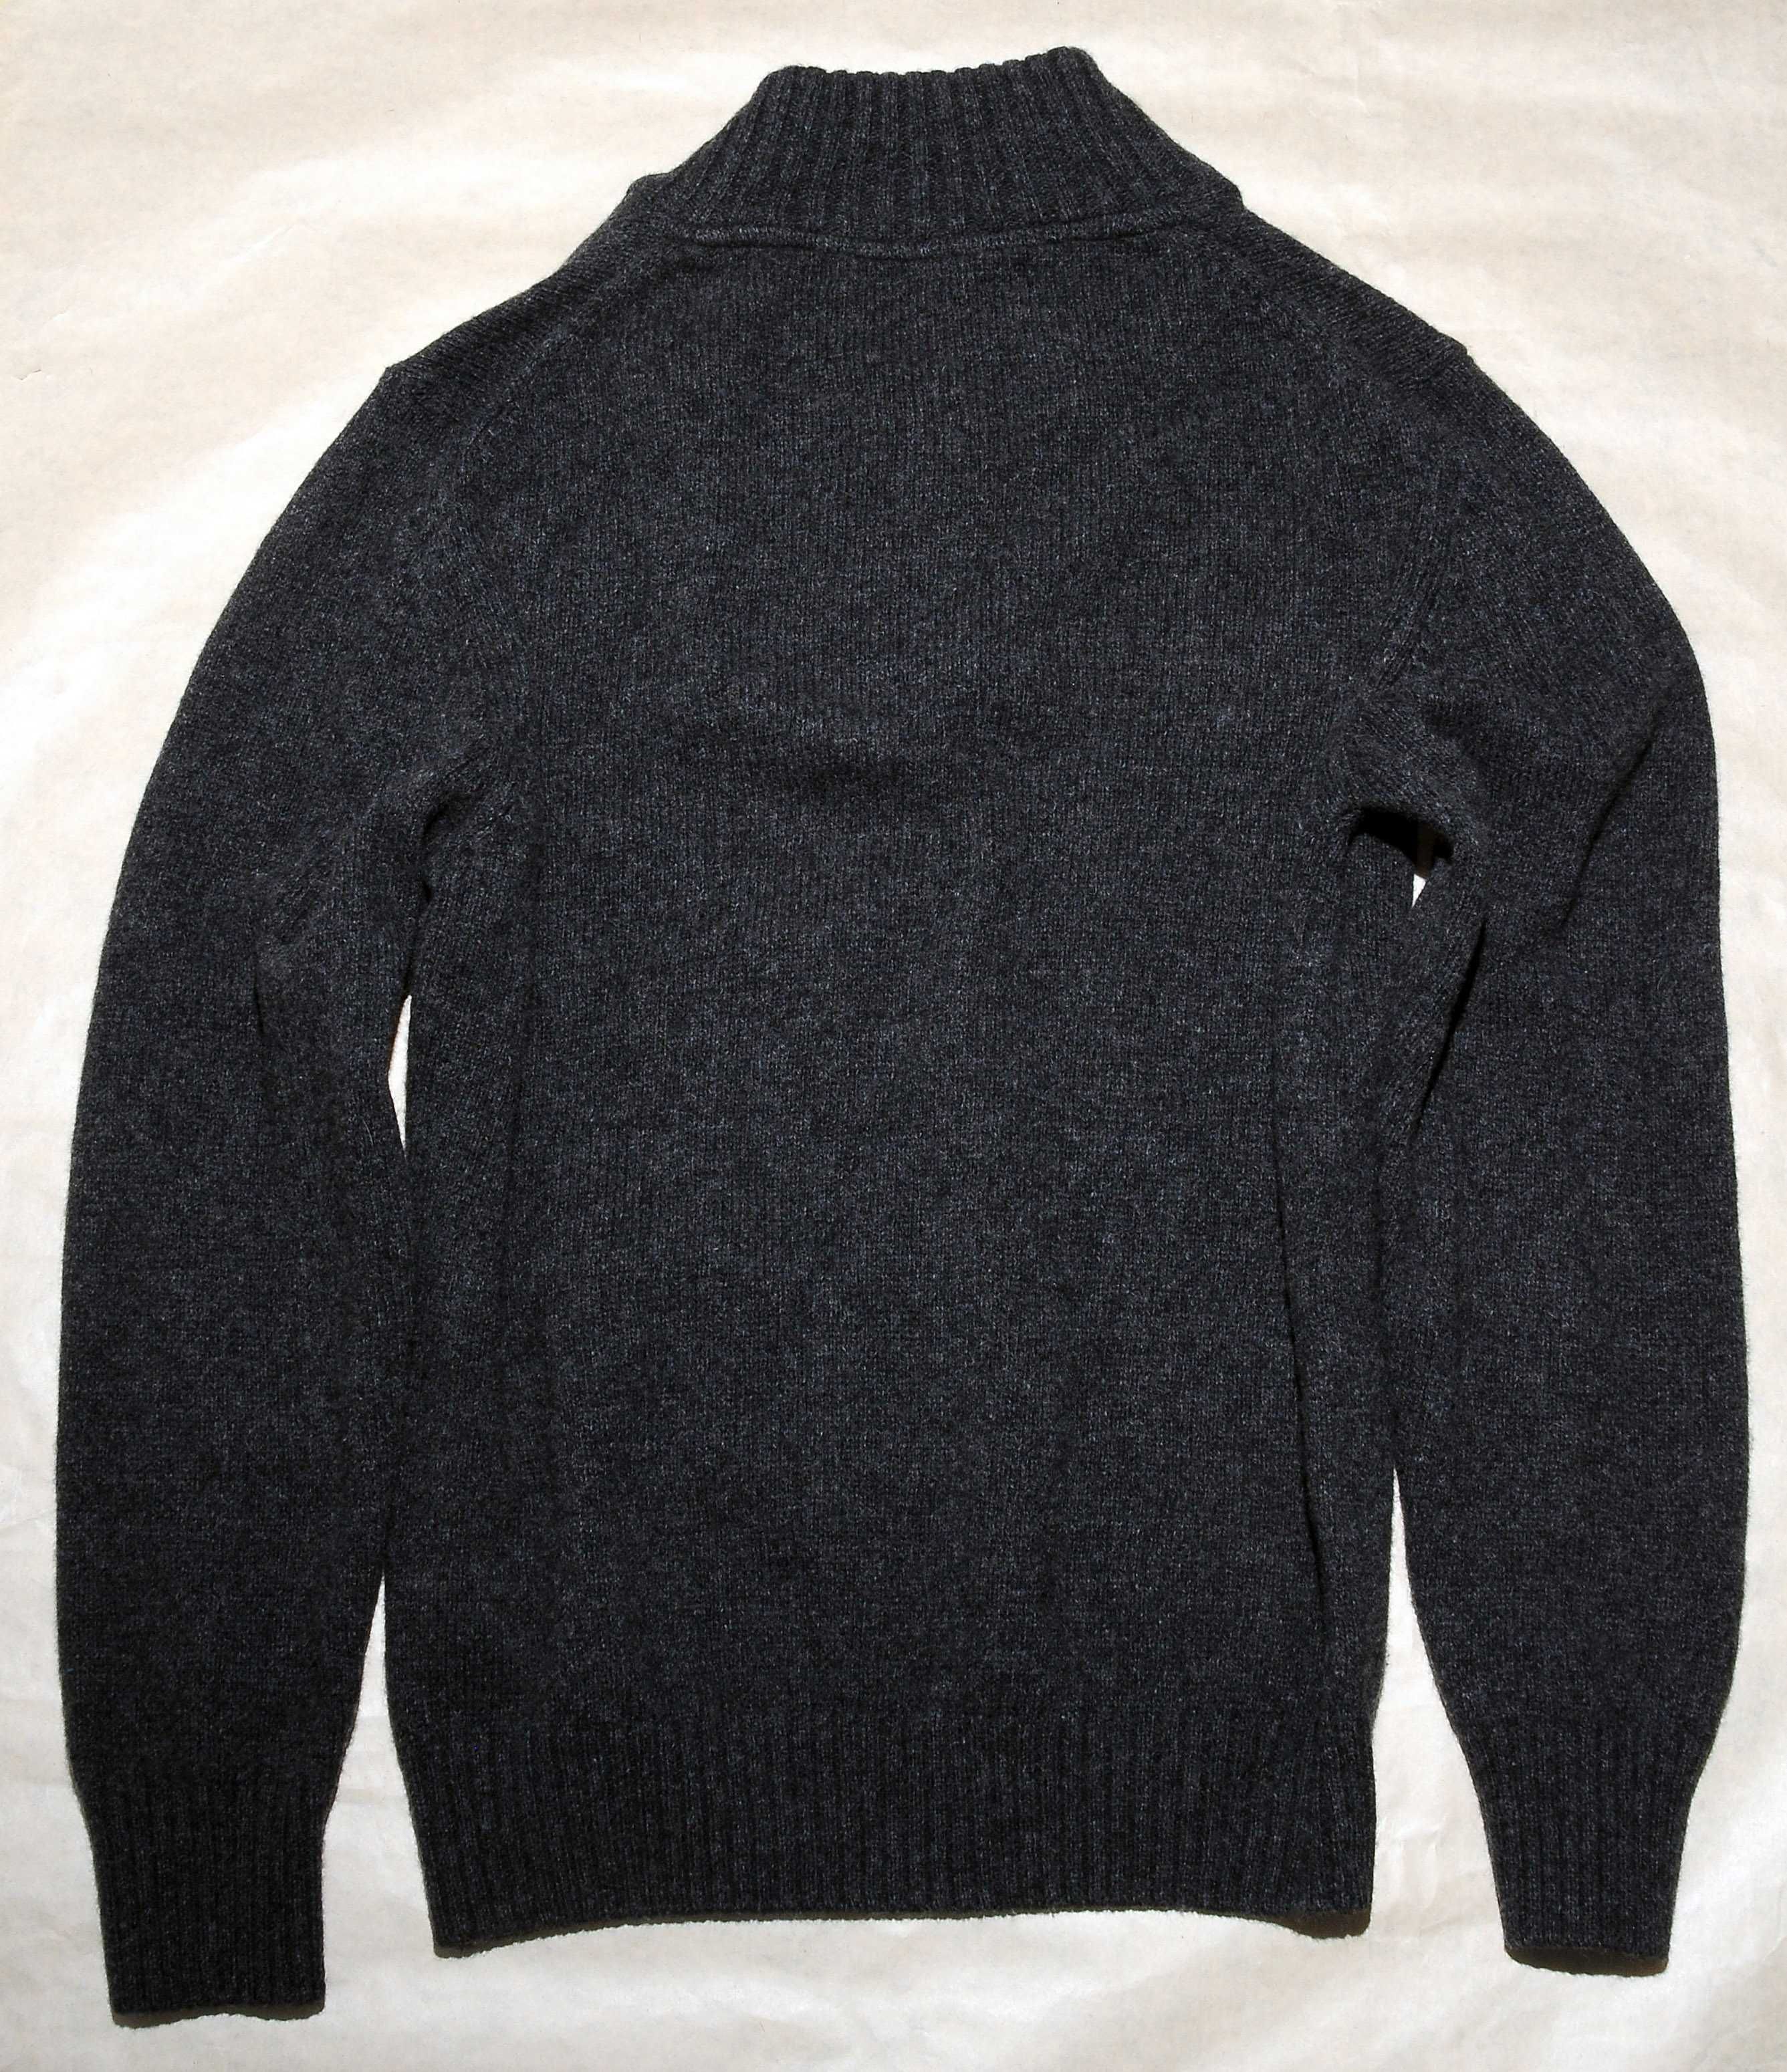 Шерстяной свитер ZARA MAN L 80% шерсти Испания серый